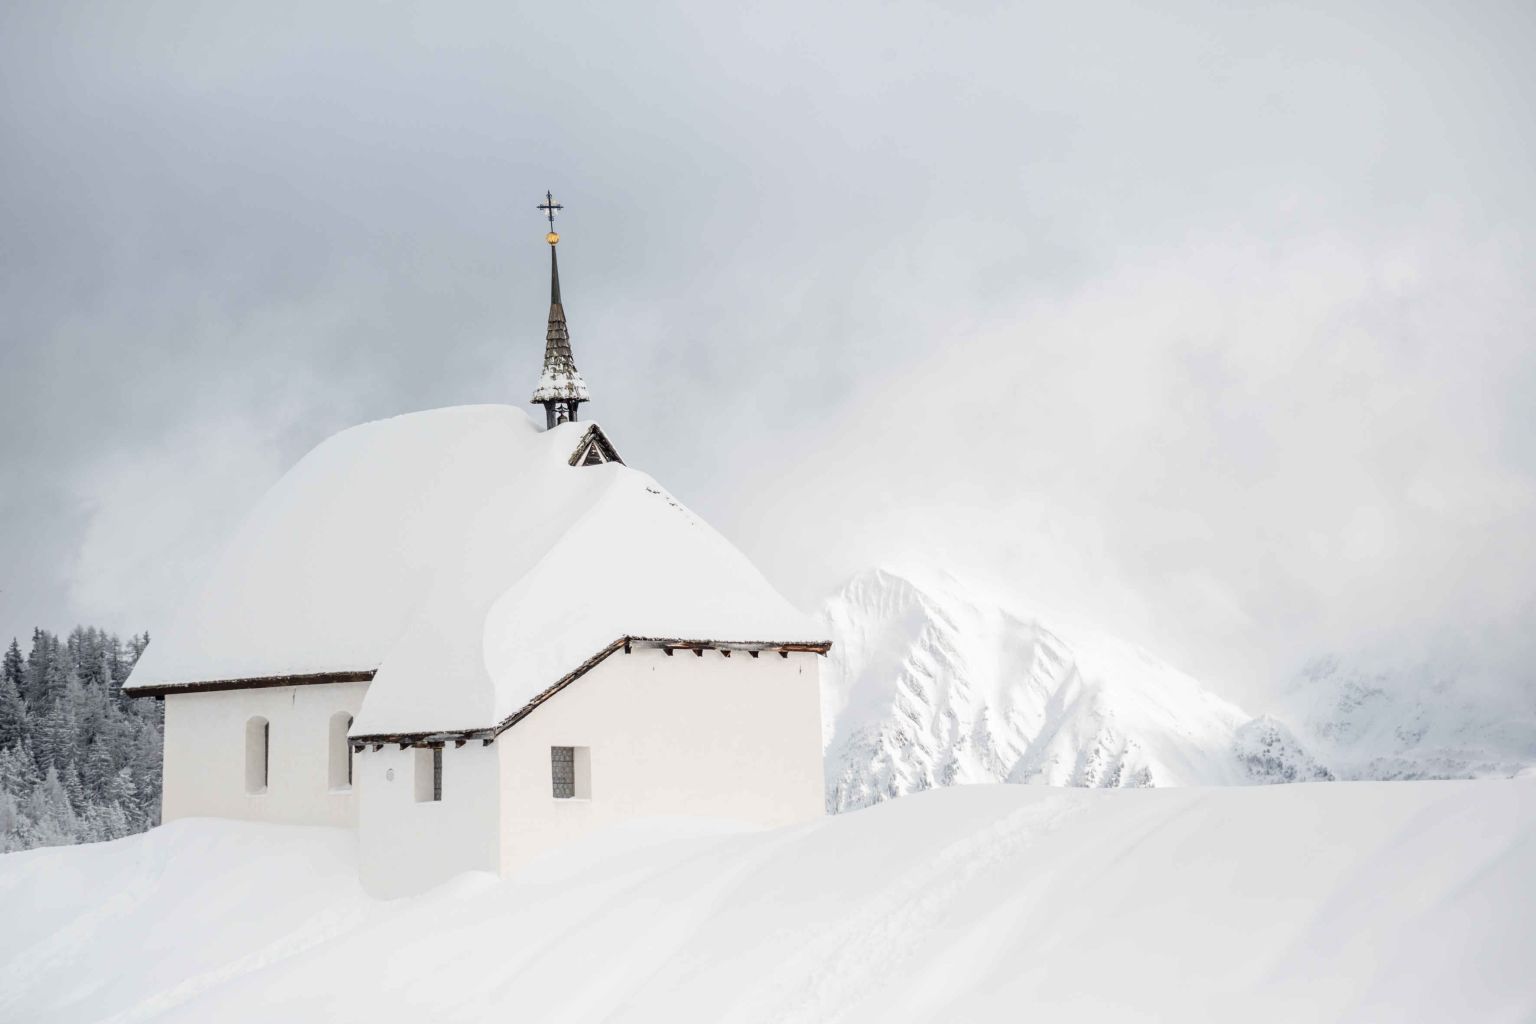 Chapelle enneigée sur la Bettmeralp, Valais, Suisse